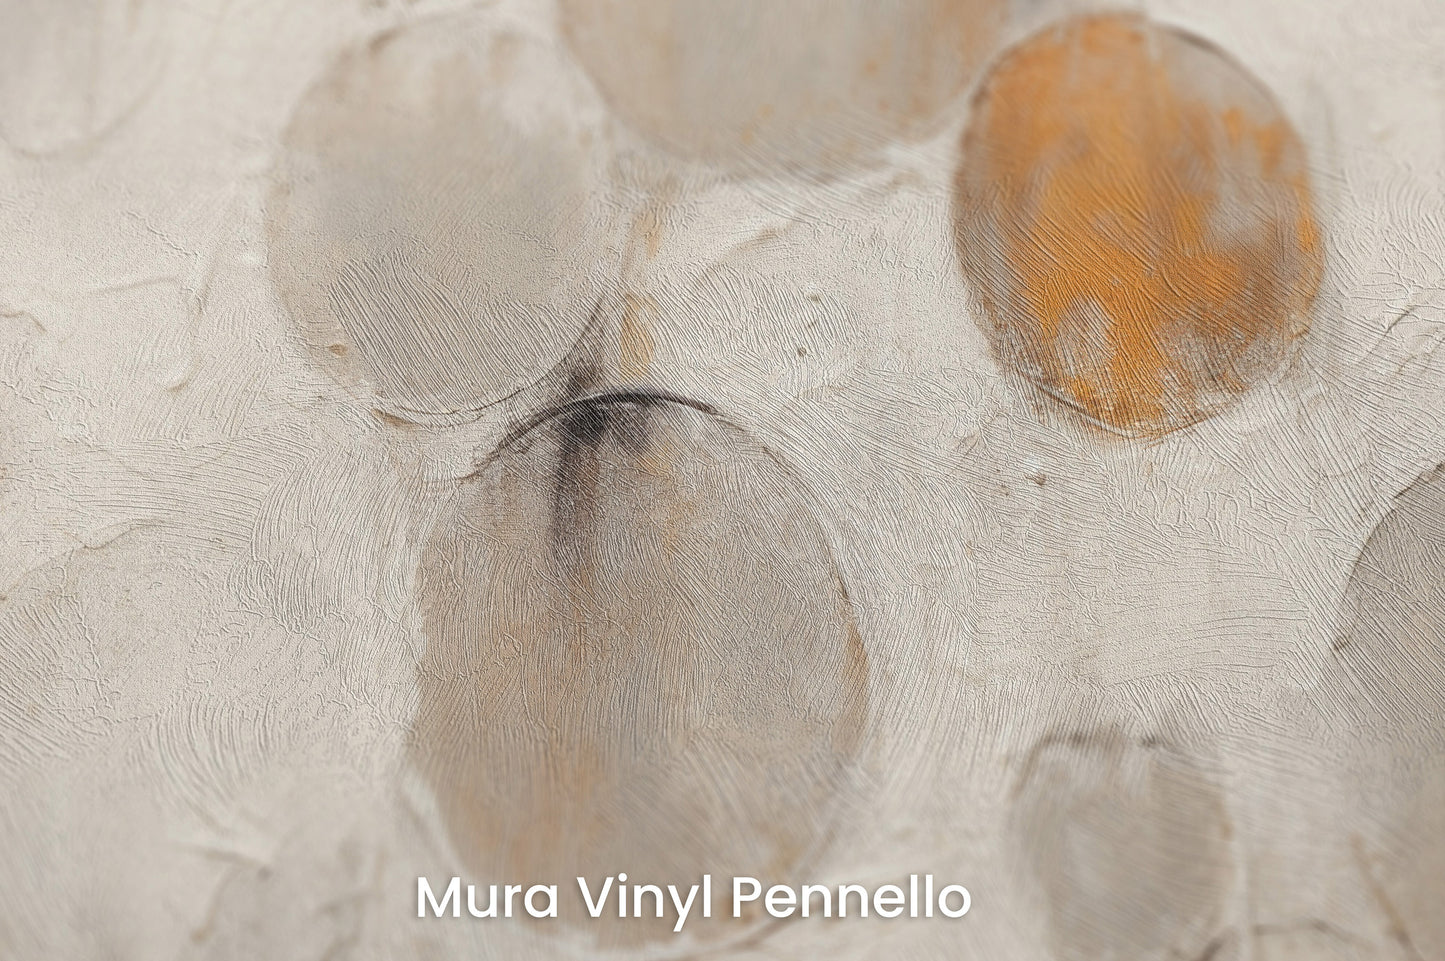 Zbliżenie na artystyczną fototapetę o nazwie RUSTIC ASTRAL SPHERES na podłożu Mura Vinyl Pennello - faktura pociągnięć pędzla malarskiego.